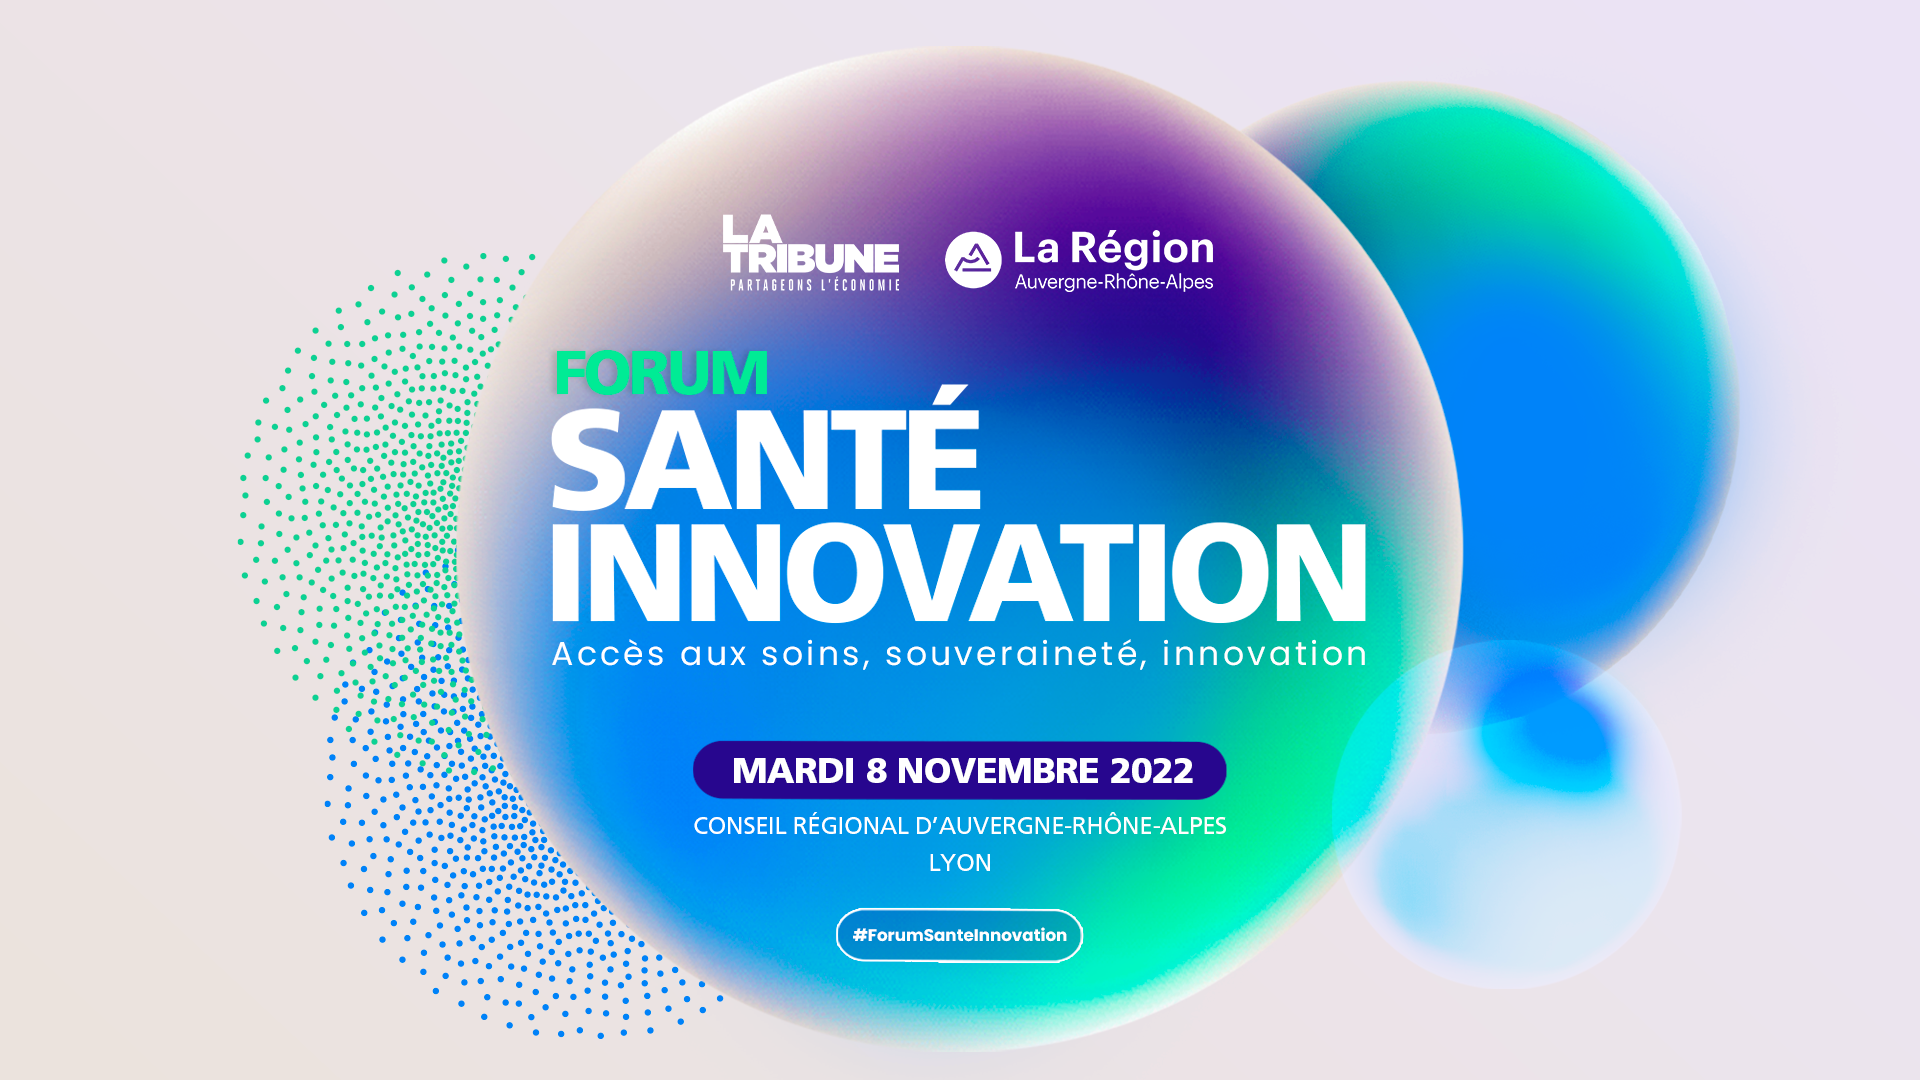 Forum santé innovation le 8 novembre 2022